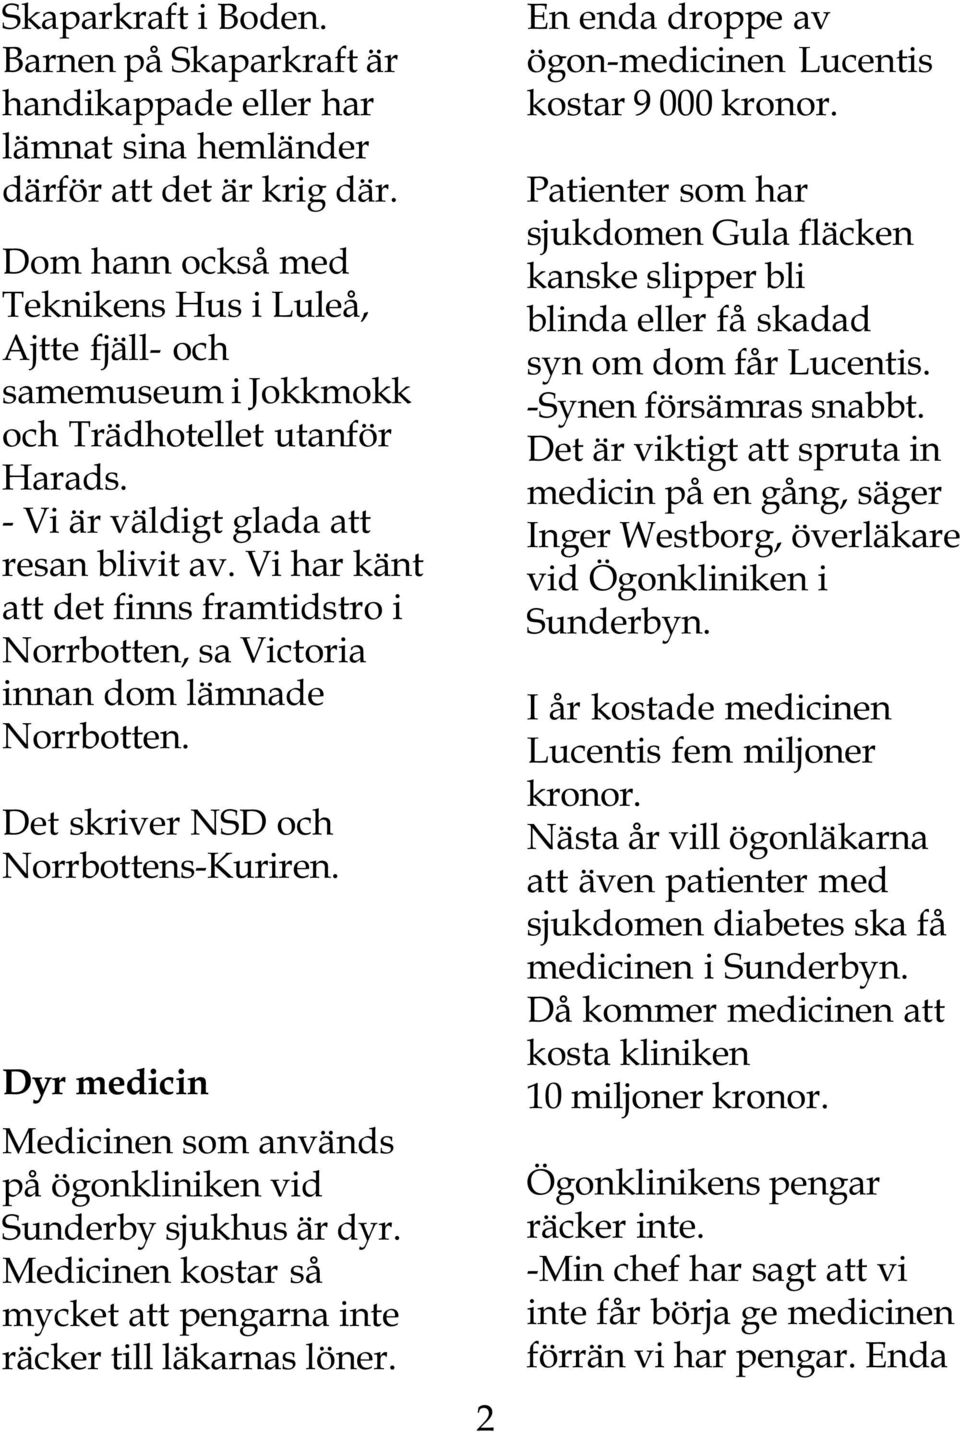 Vi har känt att det finns framtidstro i Norrbotten, sa Victoria innan dom lämnade Norrbotten. Det skriver NSD och Norrbottens-Kuriren.